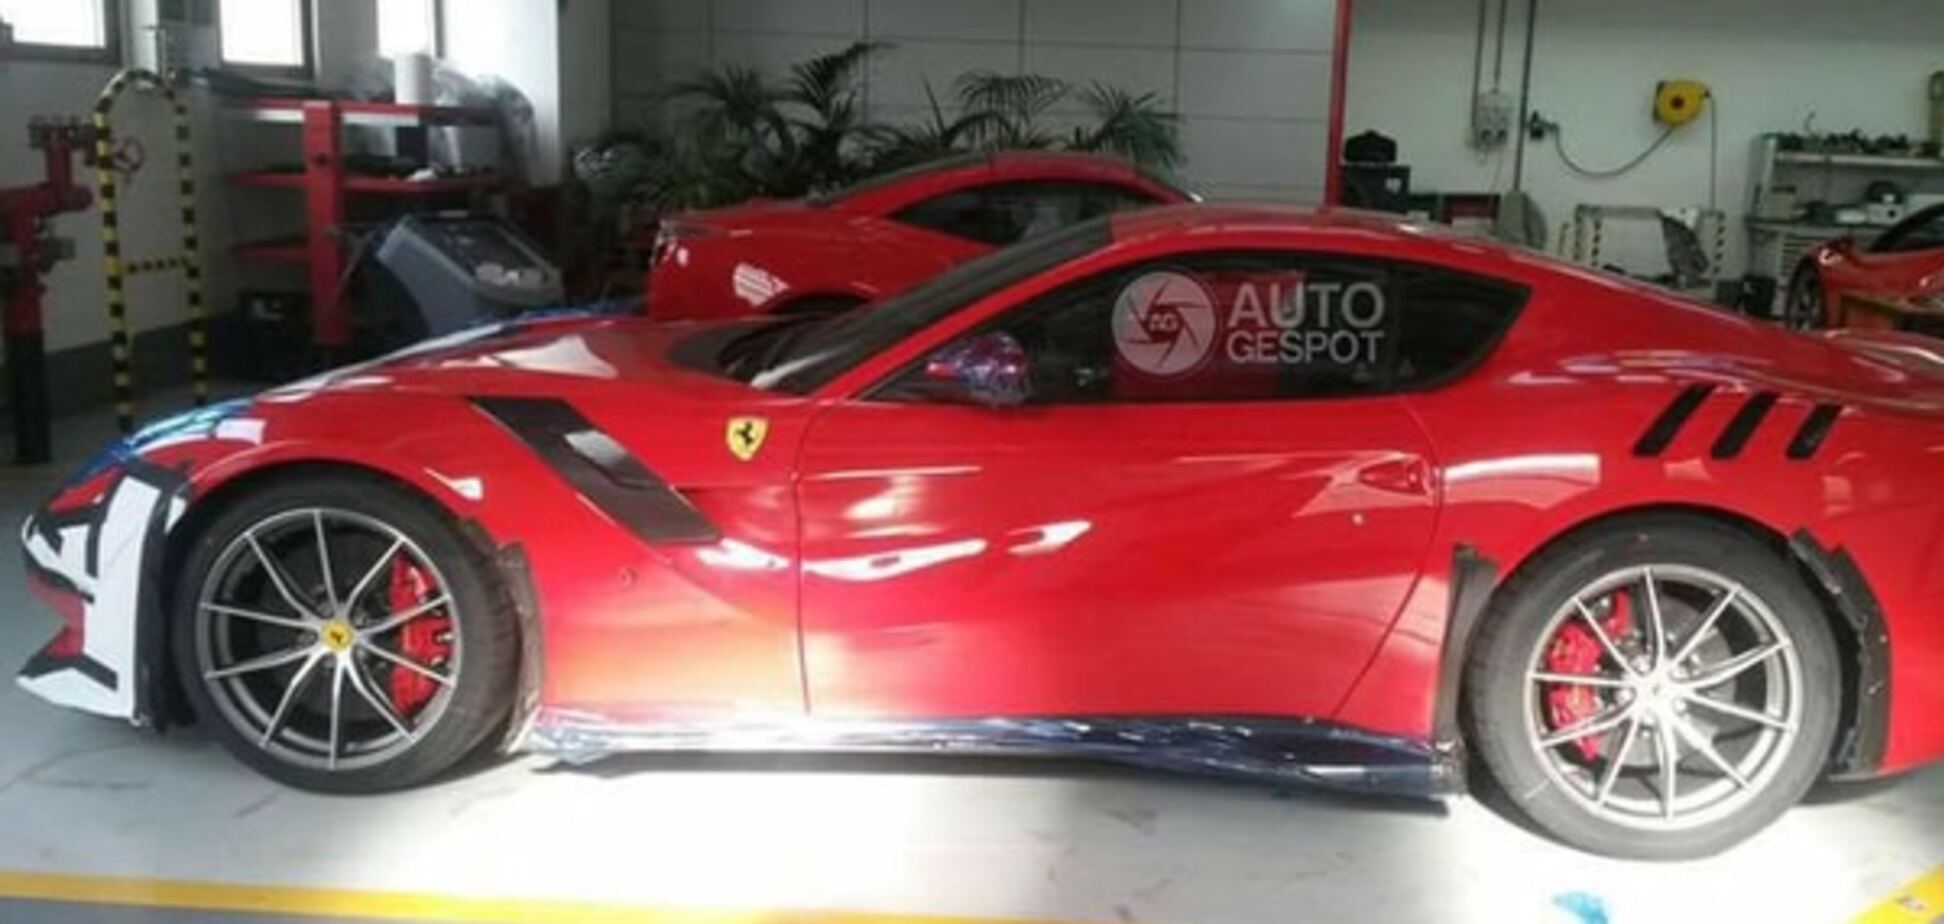 В сети появились первые фото спецверсии Ferrari F12 без камуфляжа